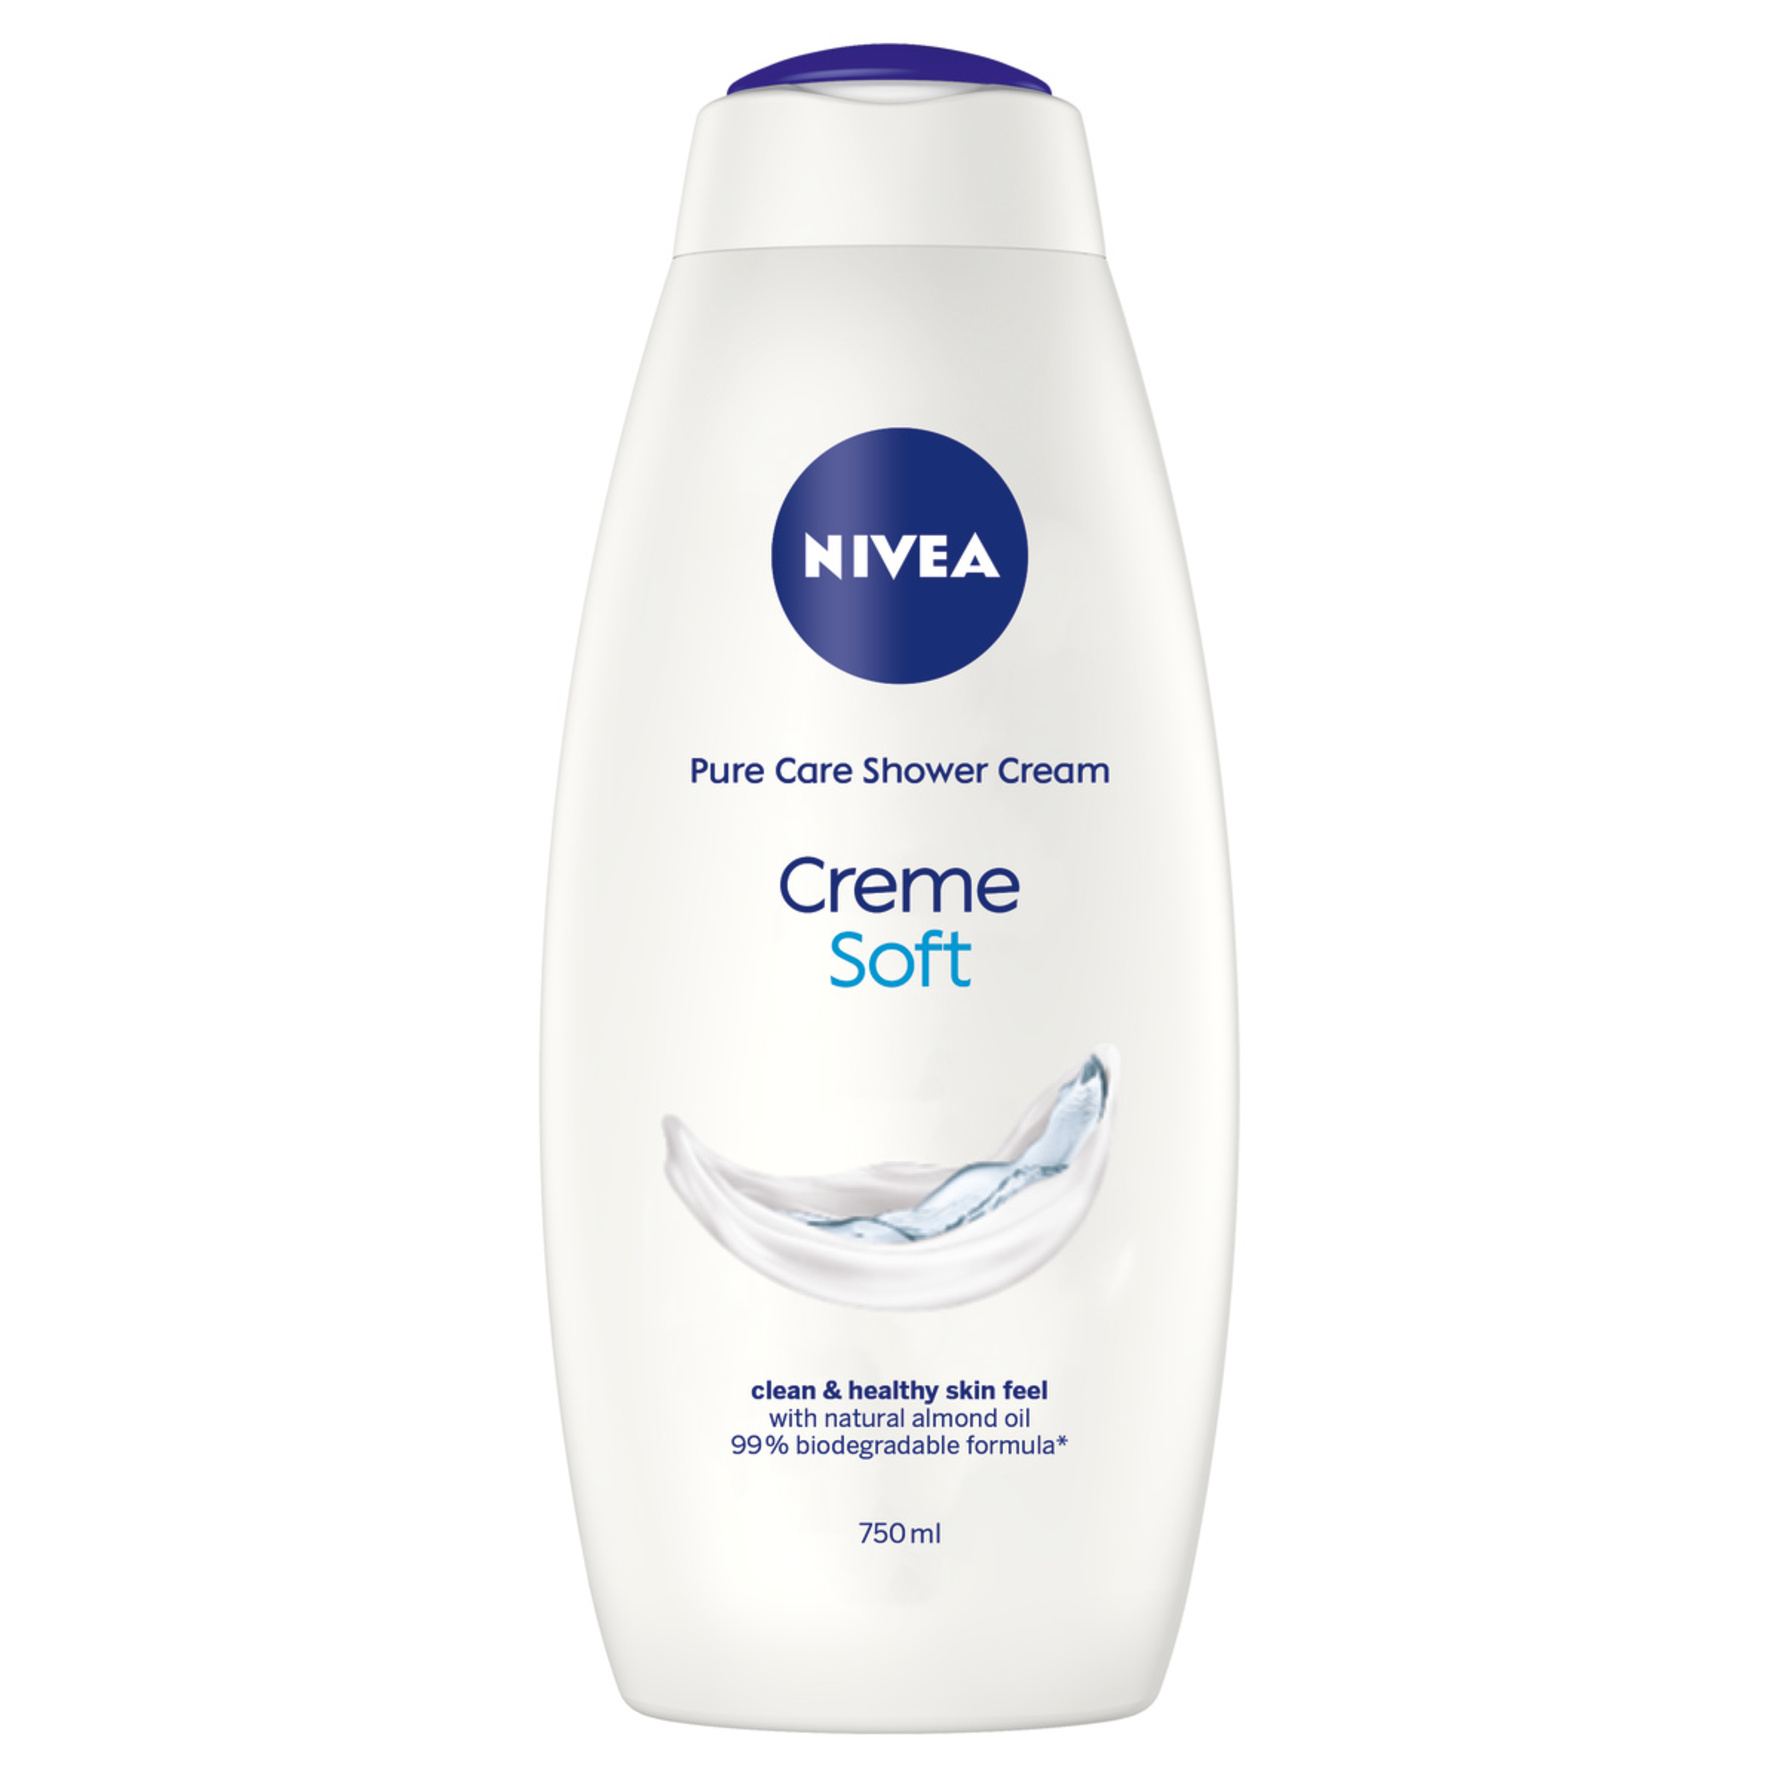 Se igennem Dwell læber Køb Nivea Creme Soft Shower Cream 750 ml - Matas